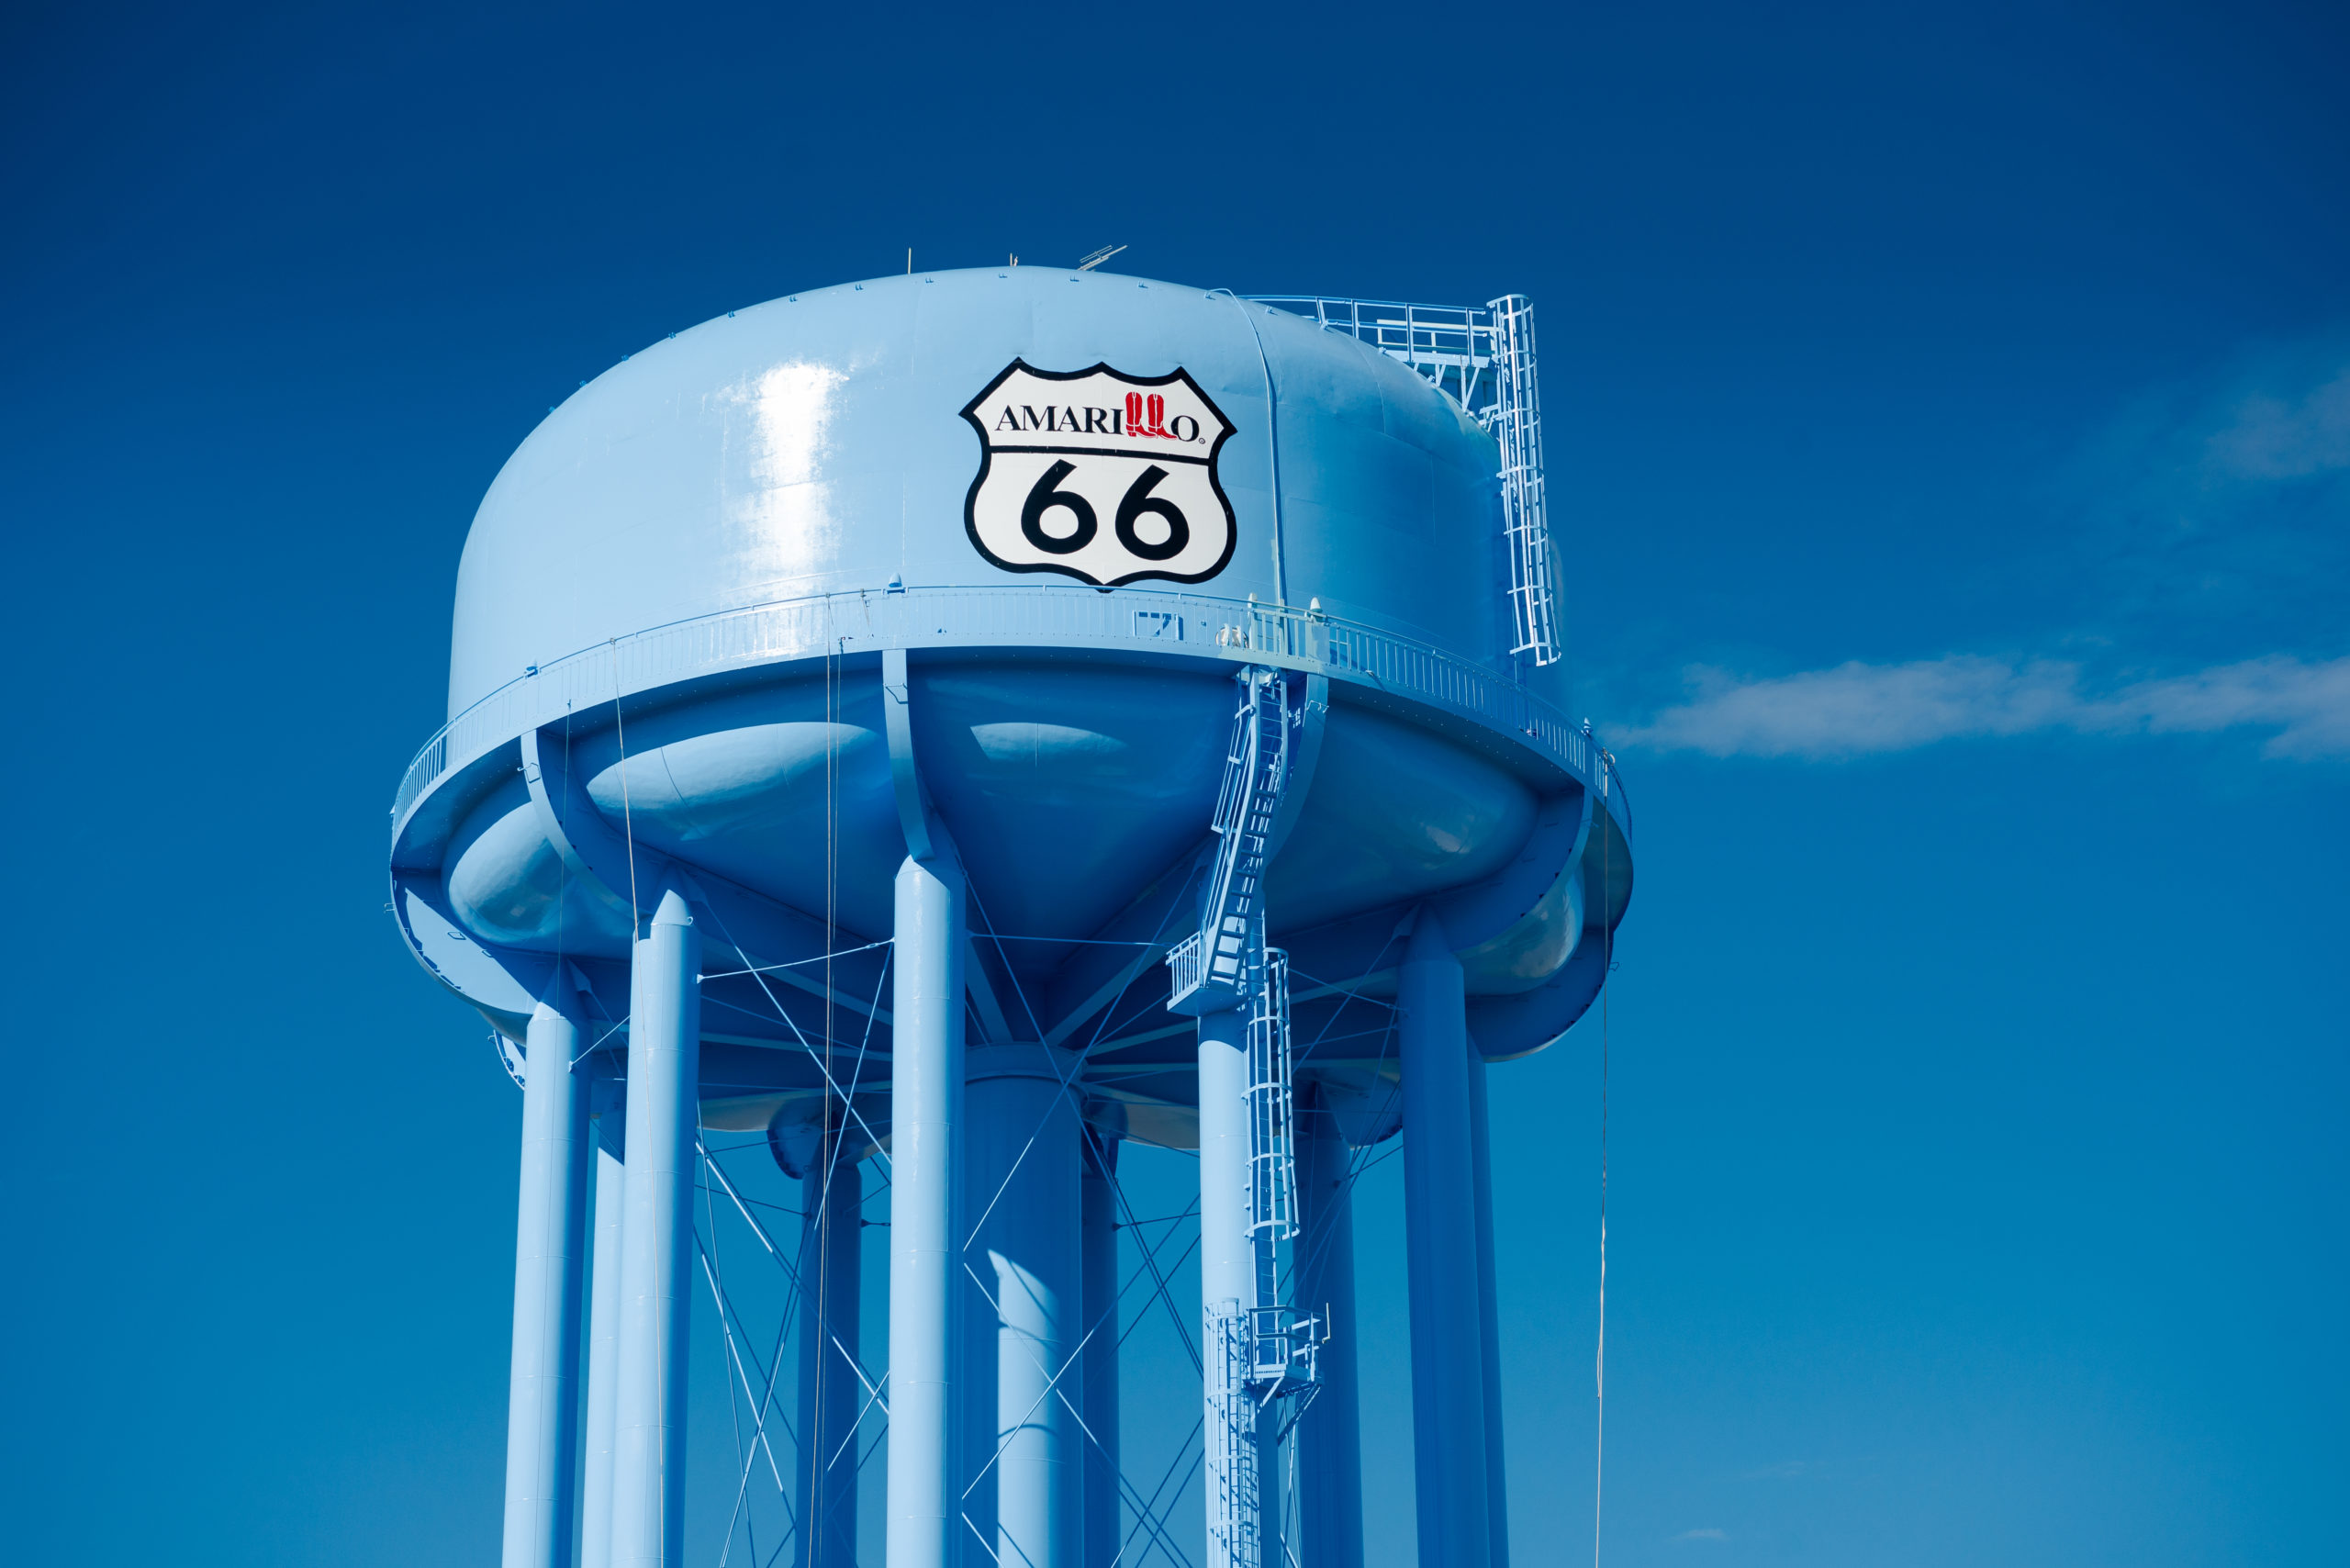 Route 66, Water tower, Water tank, Amarillo, Texas, Tnemec, Hydroflon, Lumiflon, Shannon Richardson